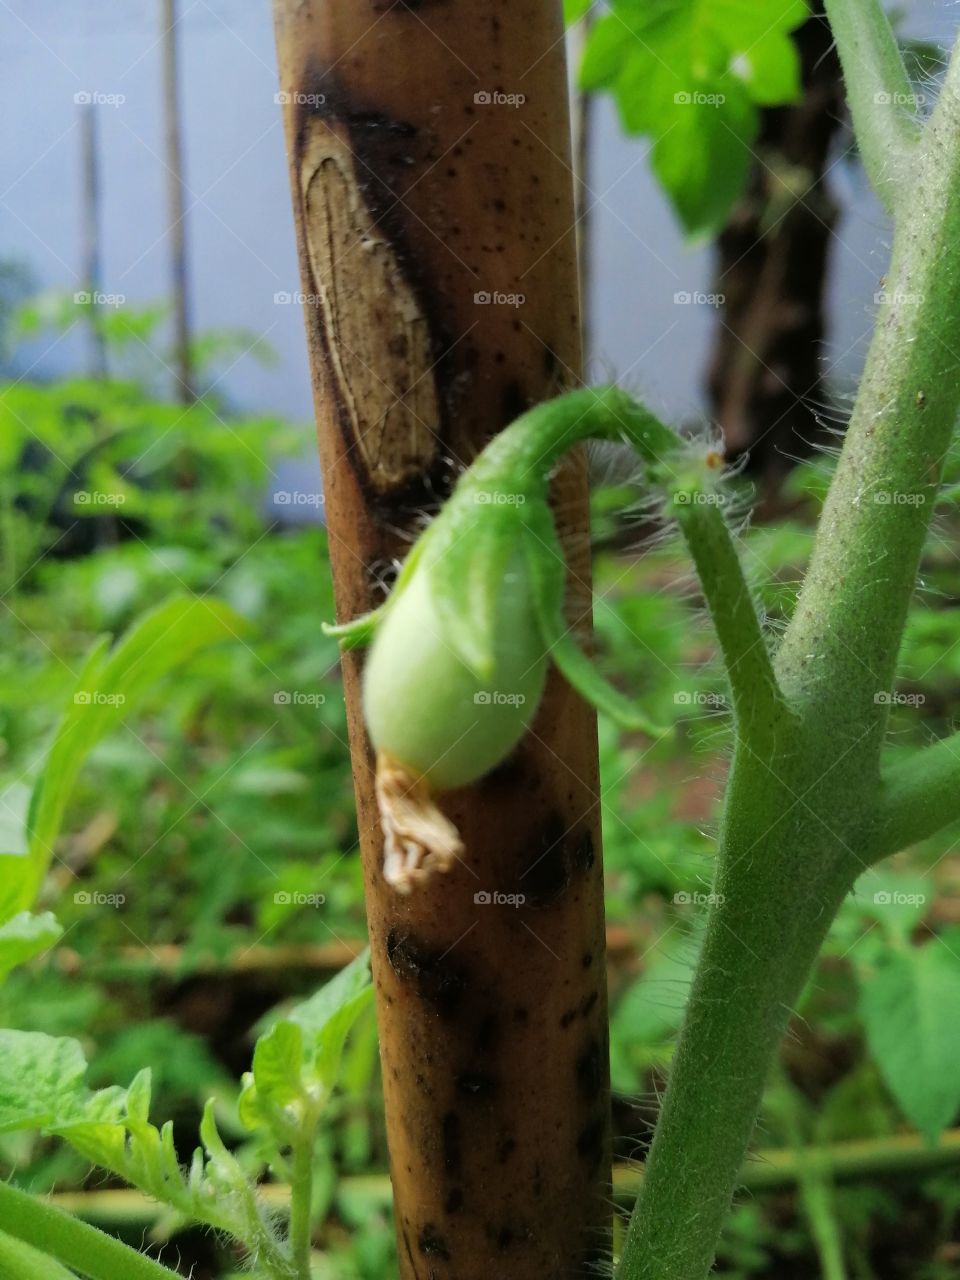 Baby Tomato